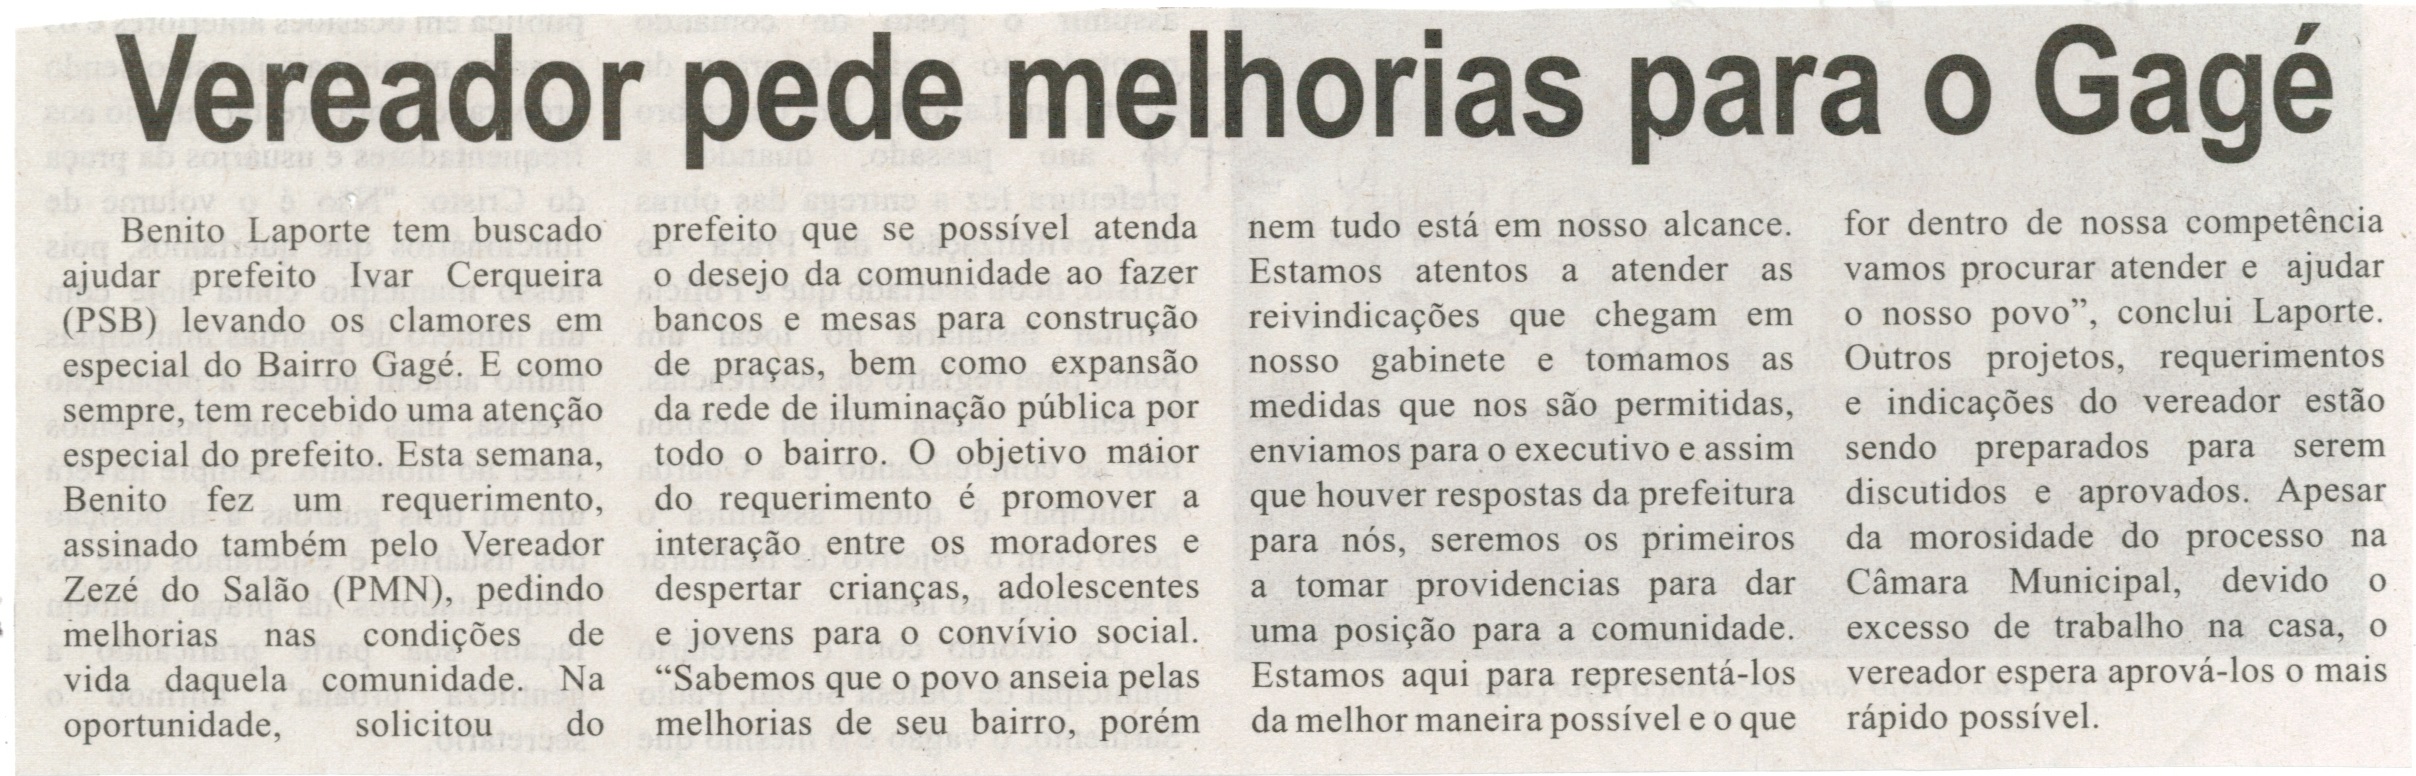 Vereador pede melhorias para o Gagé. Correio de Minas, Conselheiro Lafaiete, 07out. 2014, p. 3.